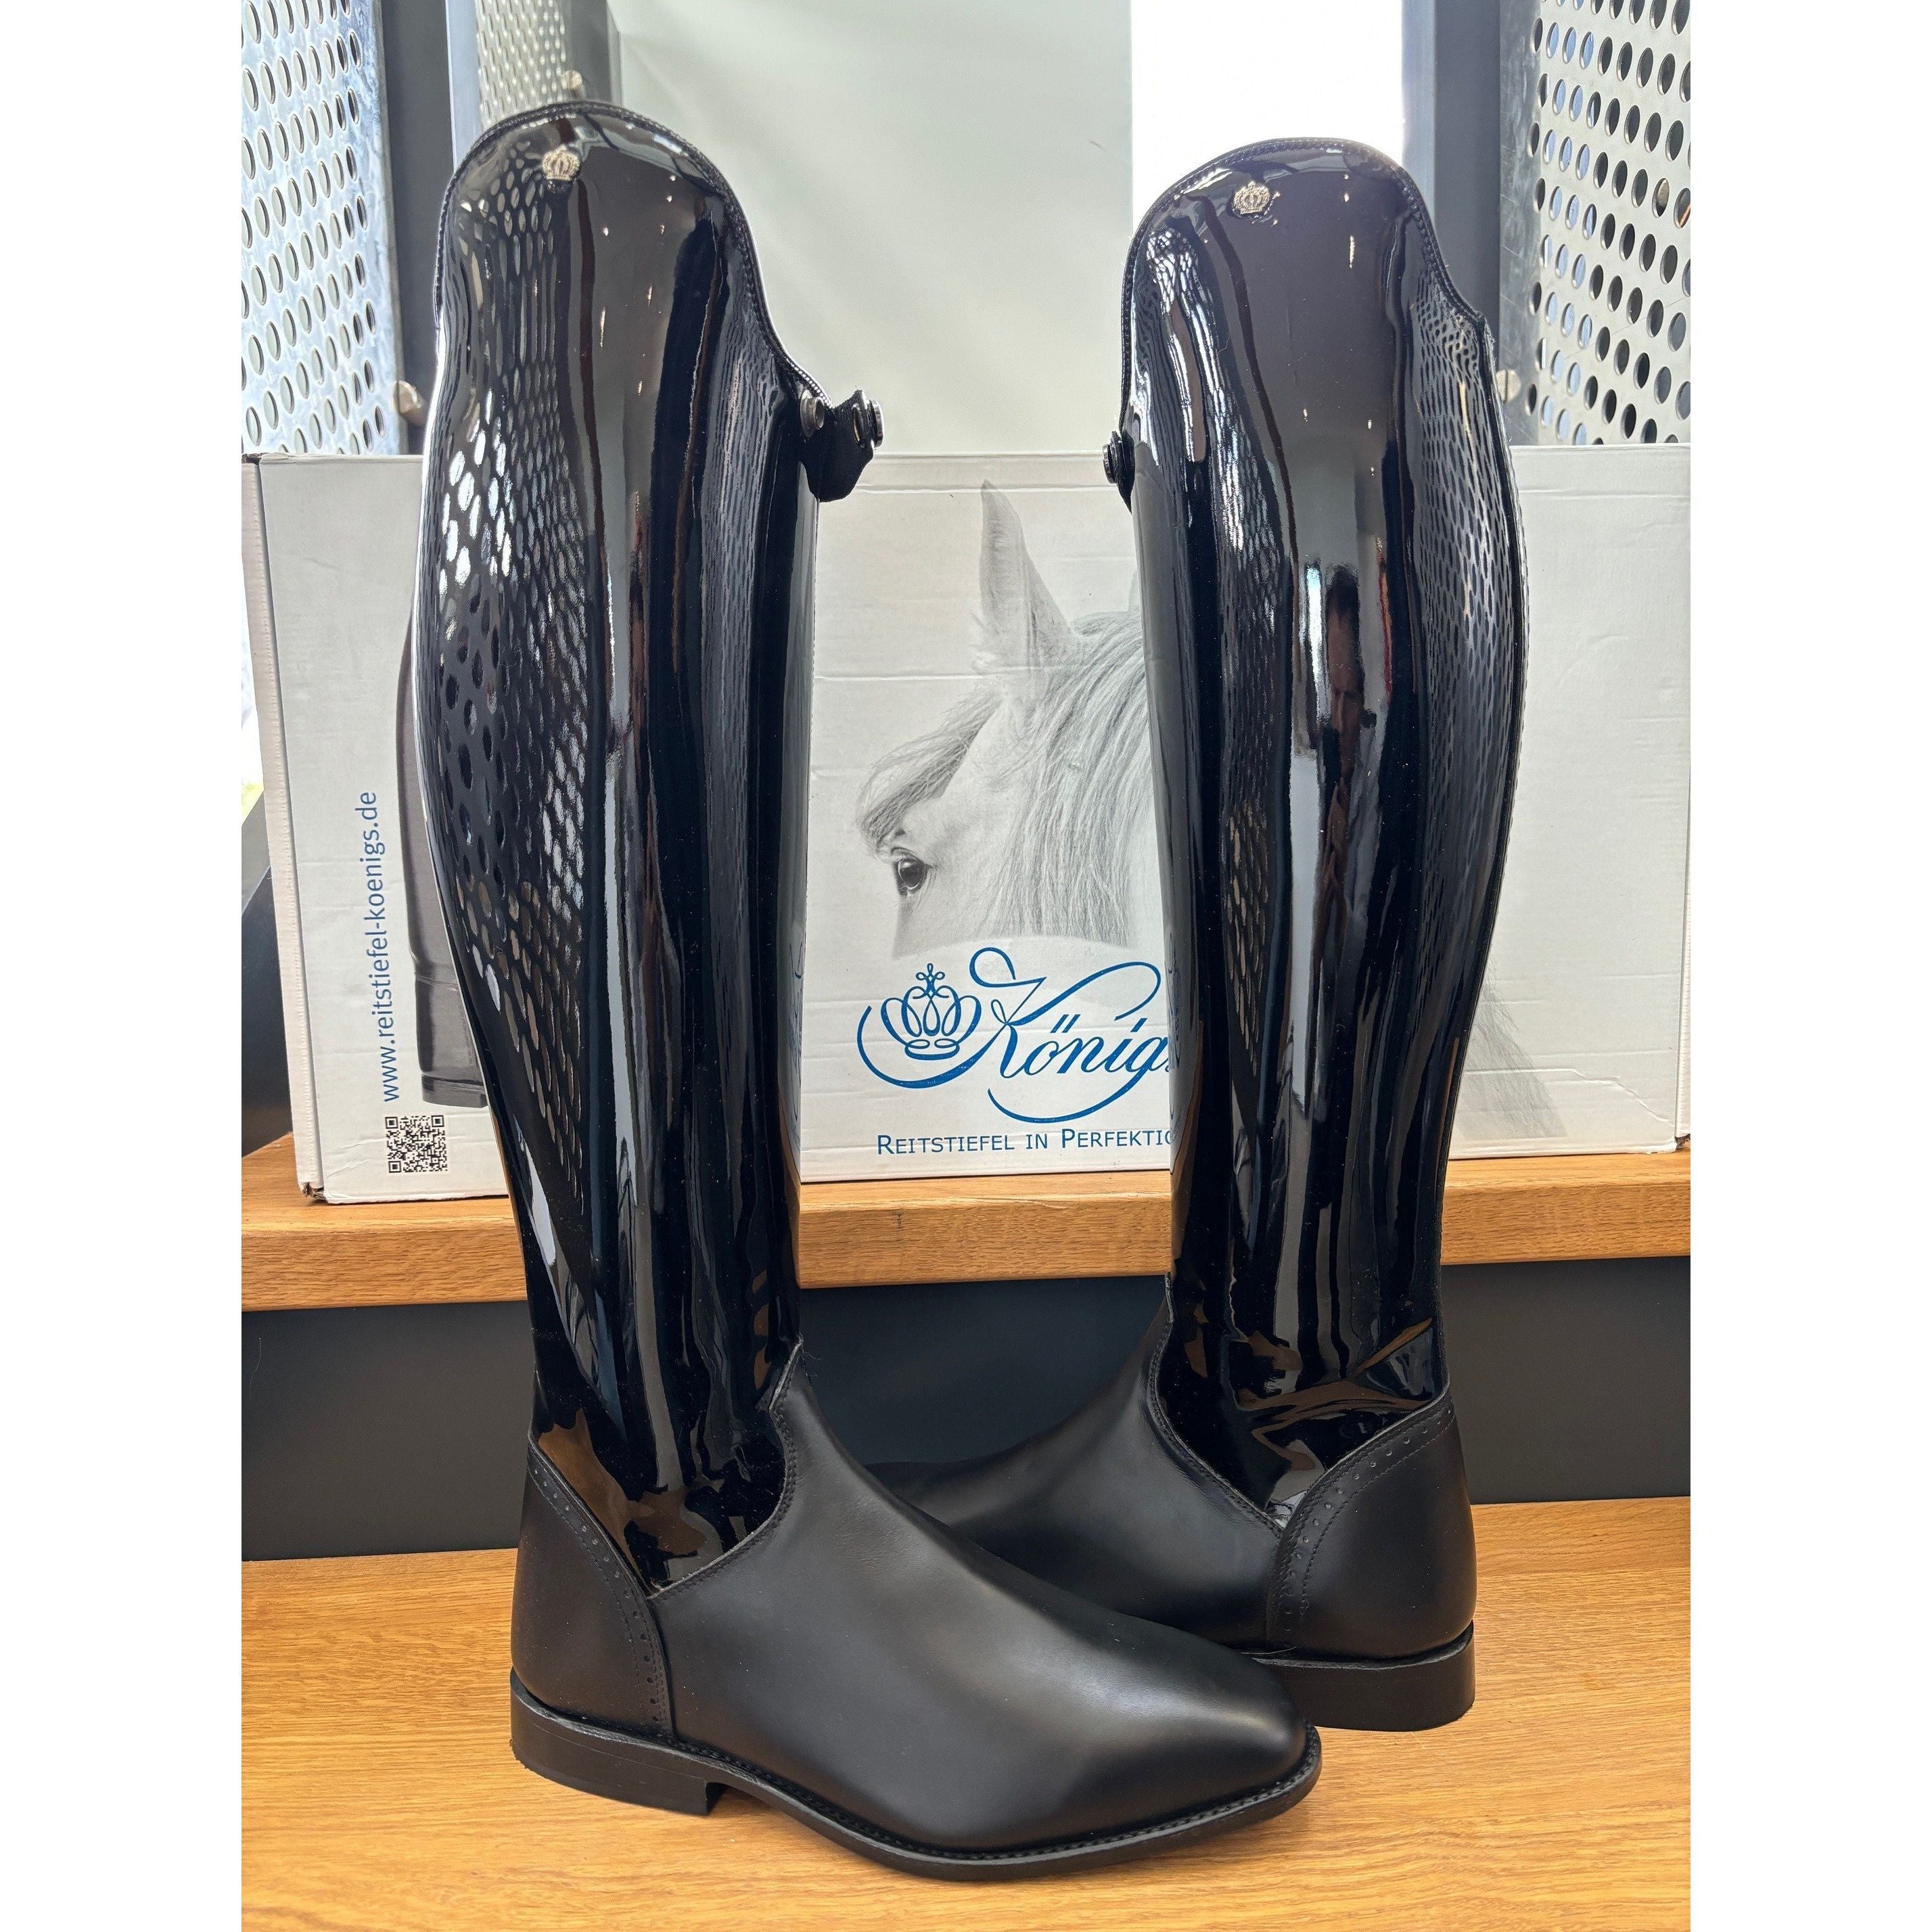 Konig Excelsior Boot - Black Patent